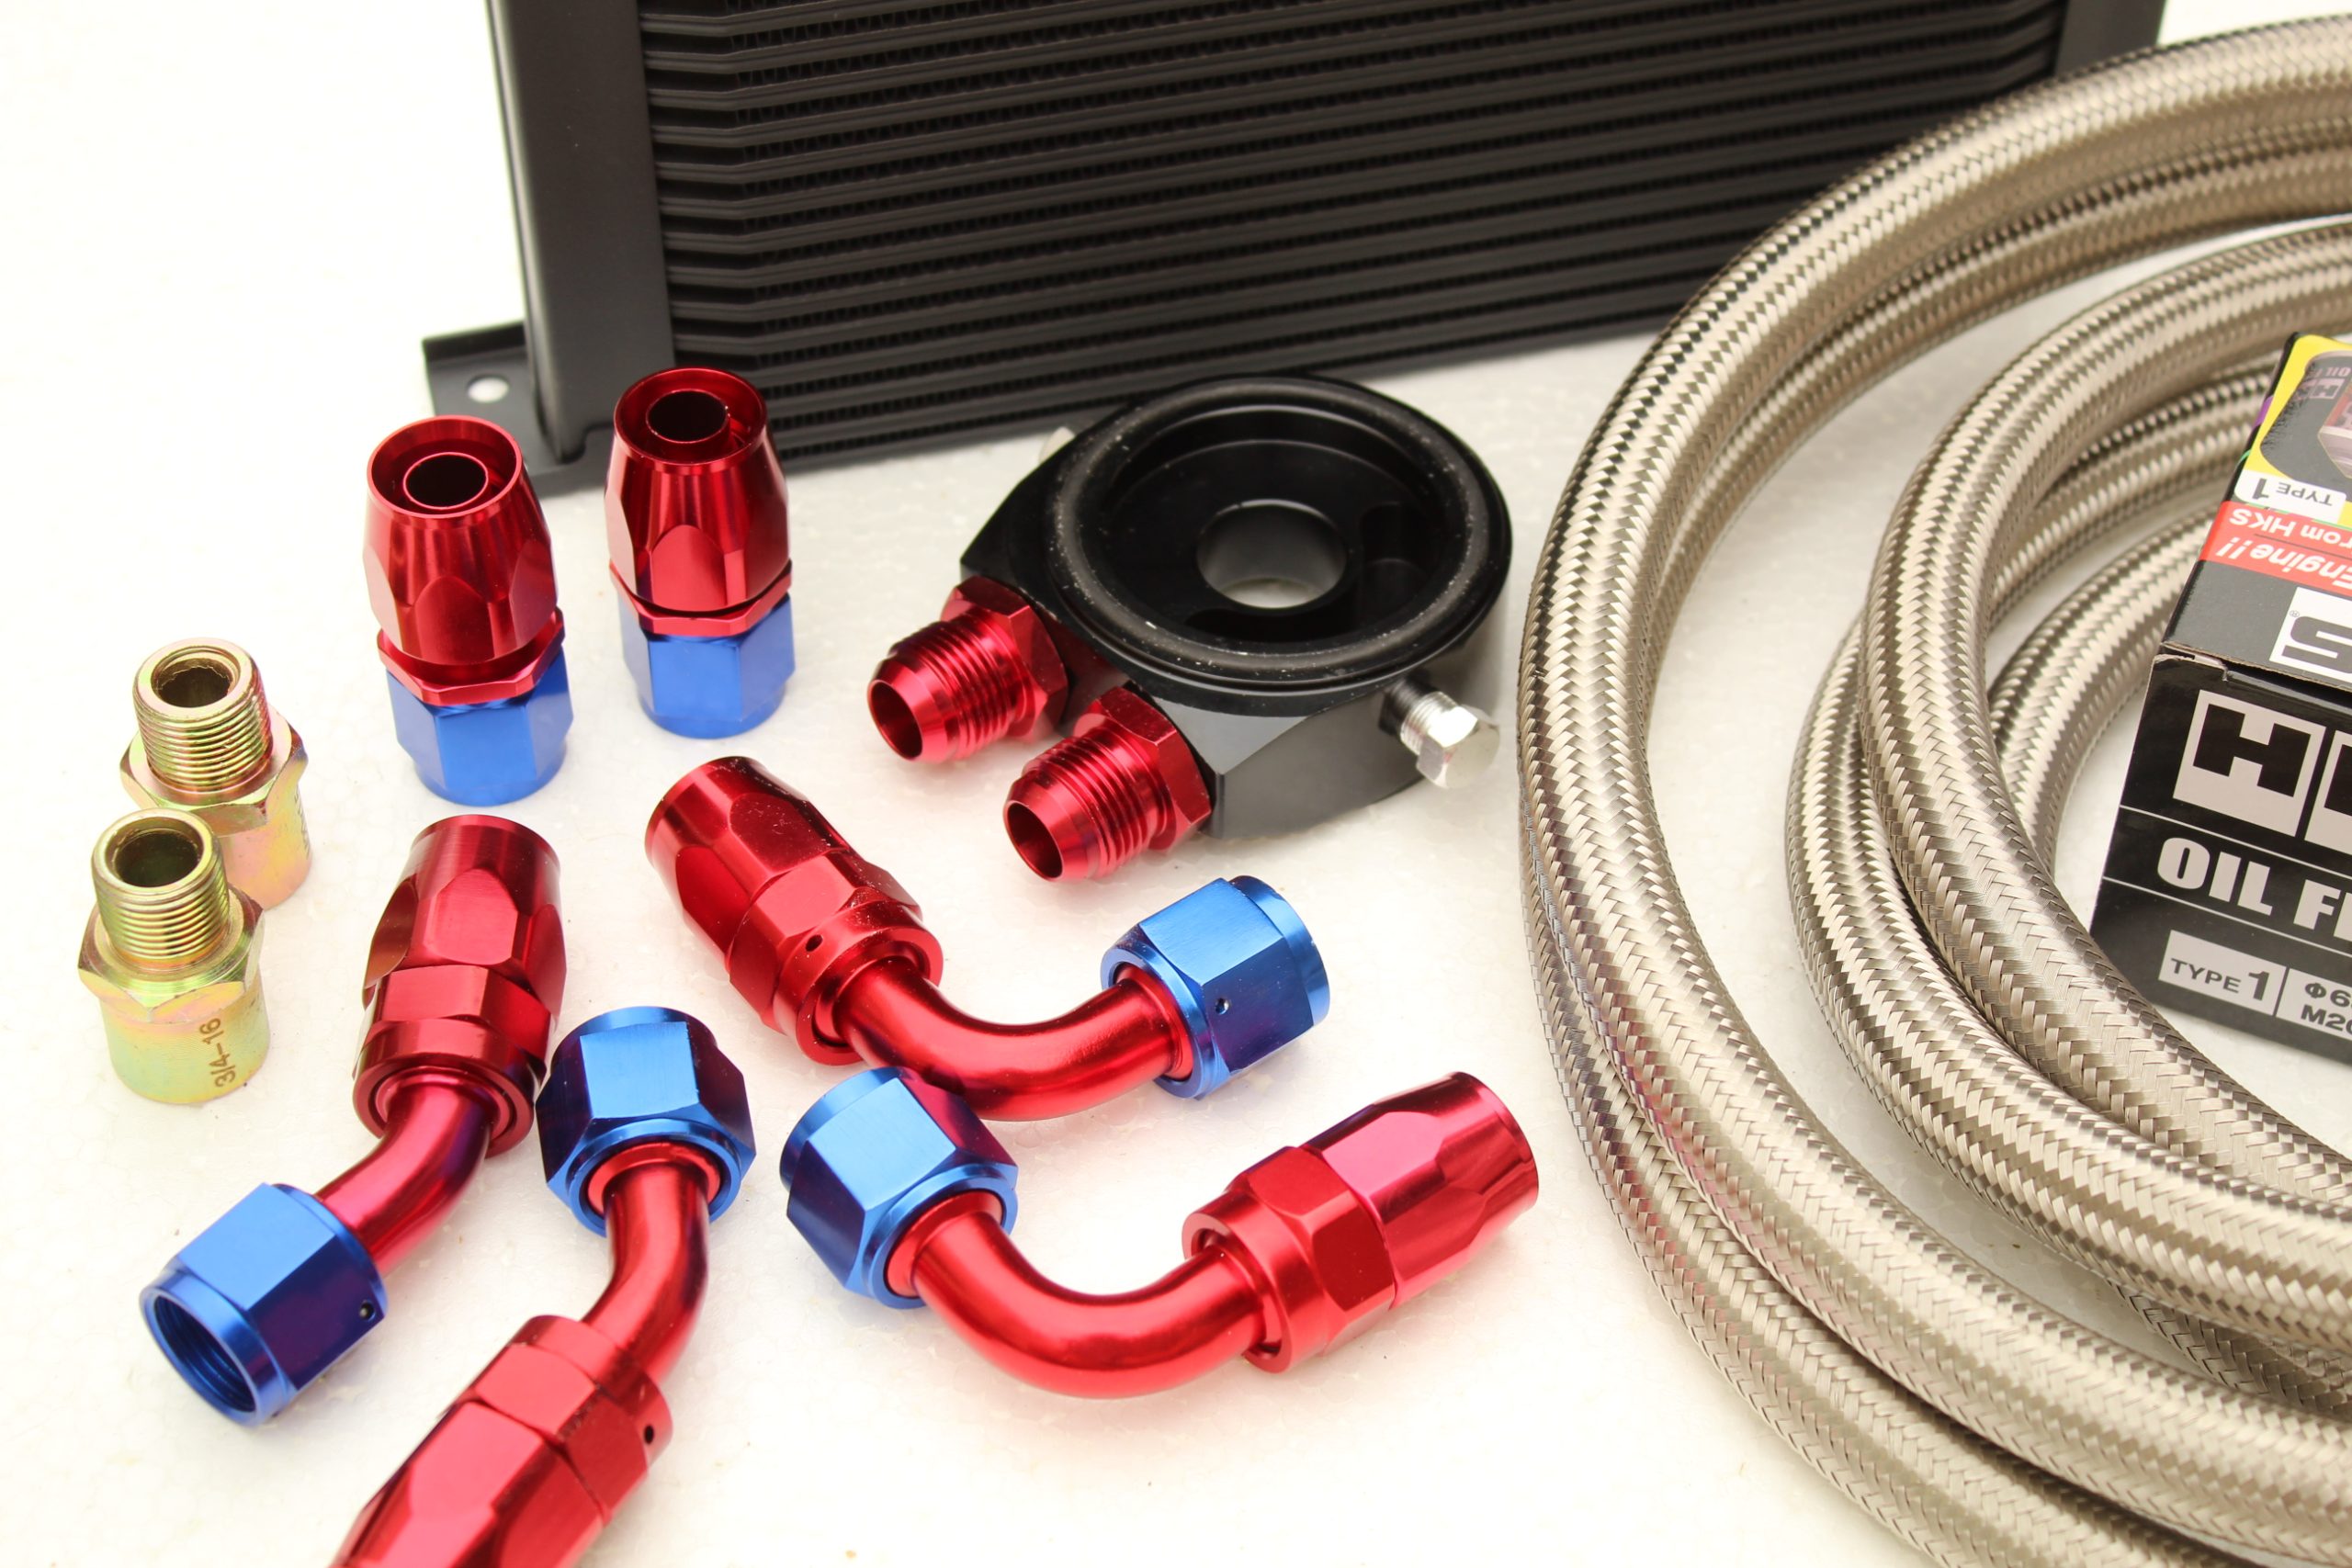 Performance 25 Row Oil Cooler Kit + HKS Filter for Nissan 350Z or 370Z V6